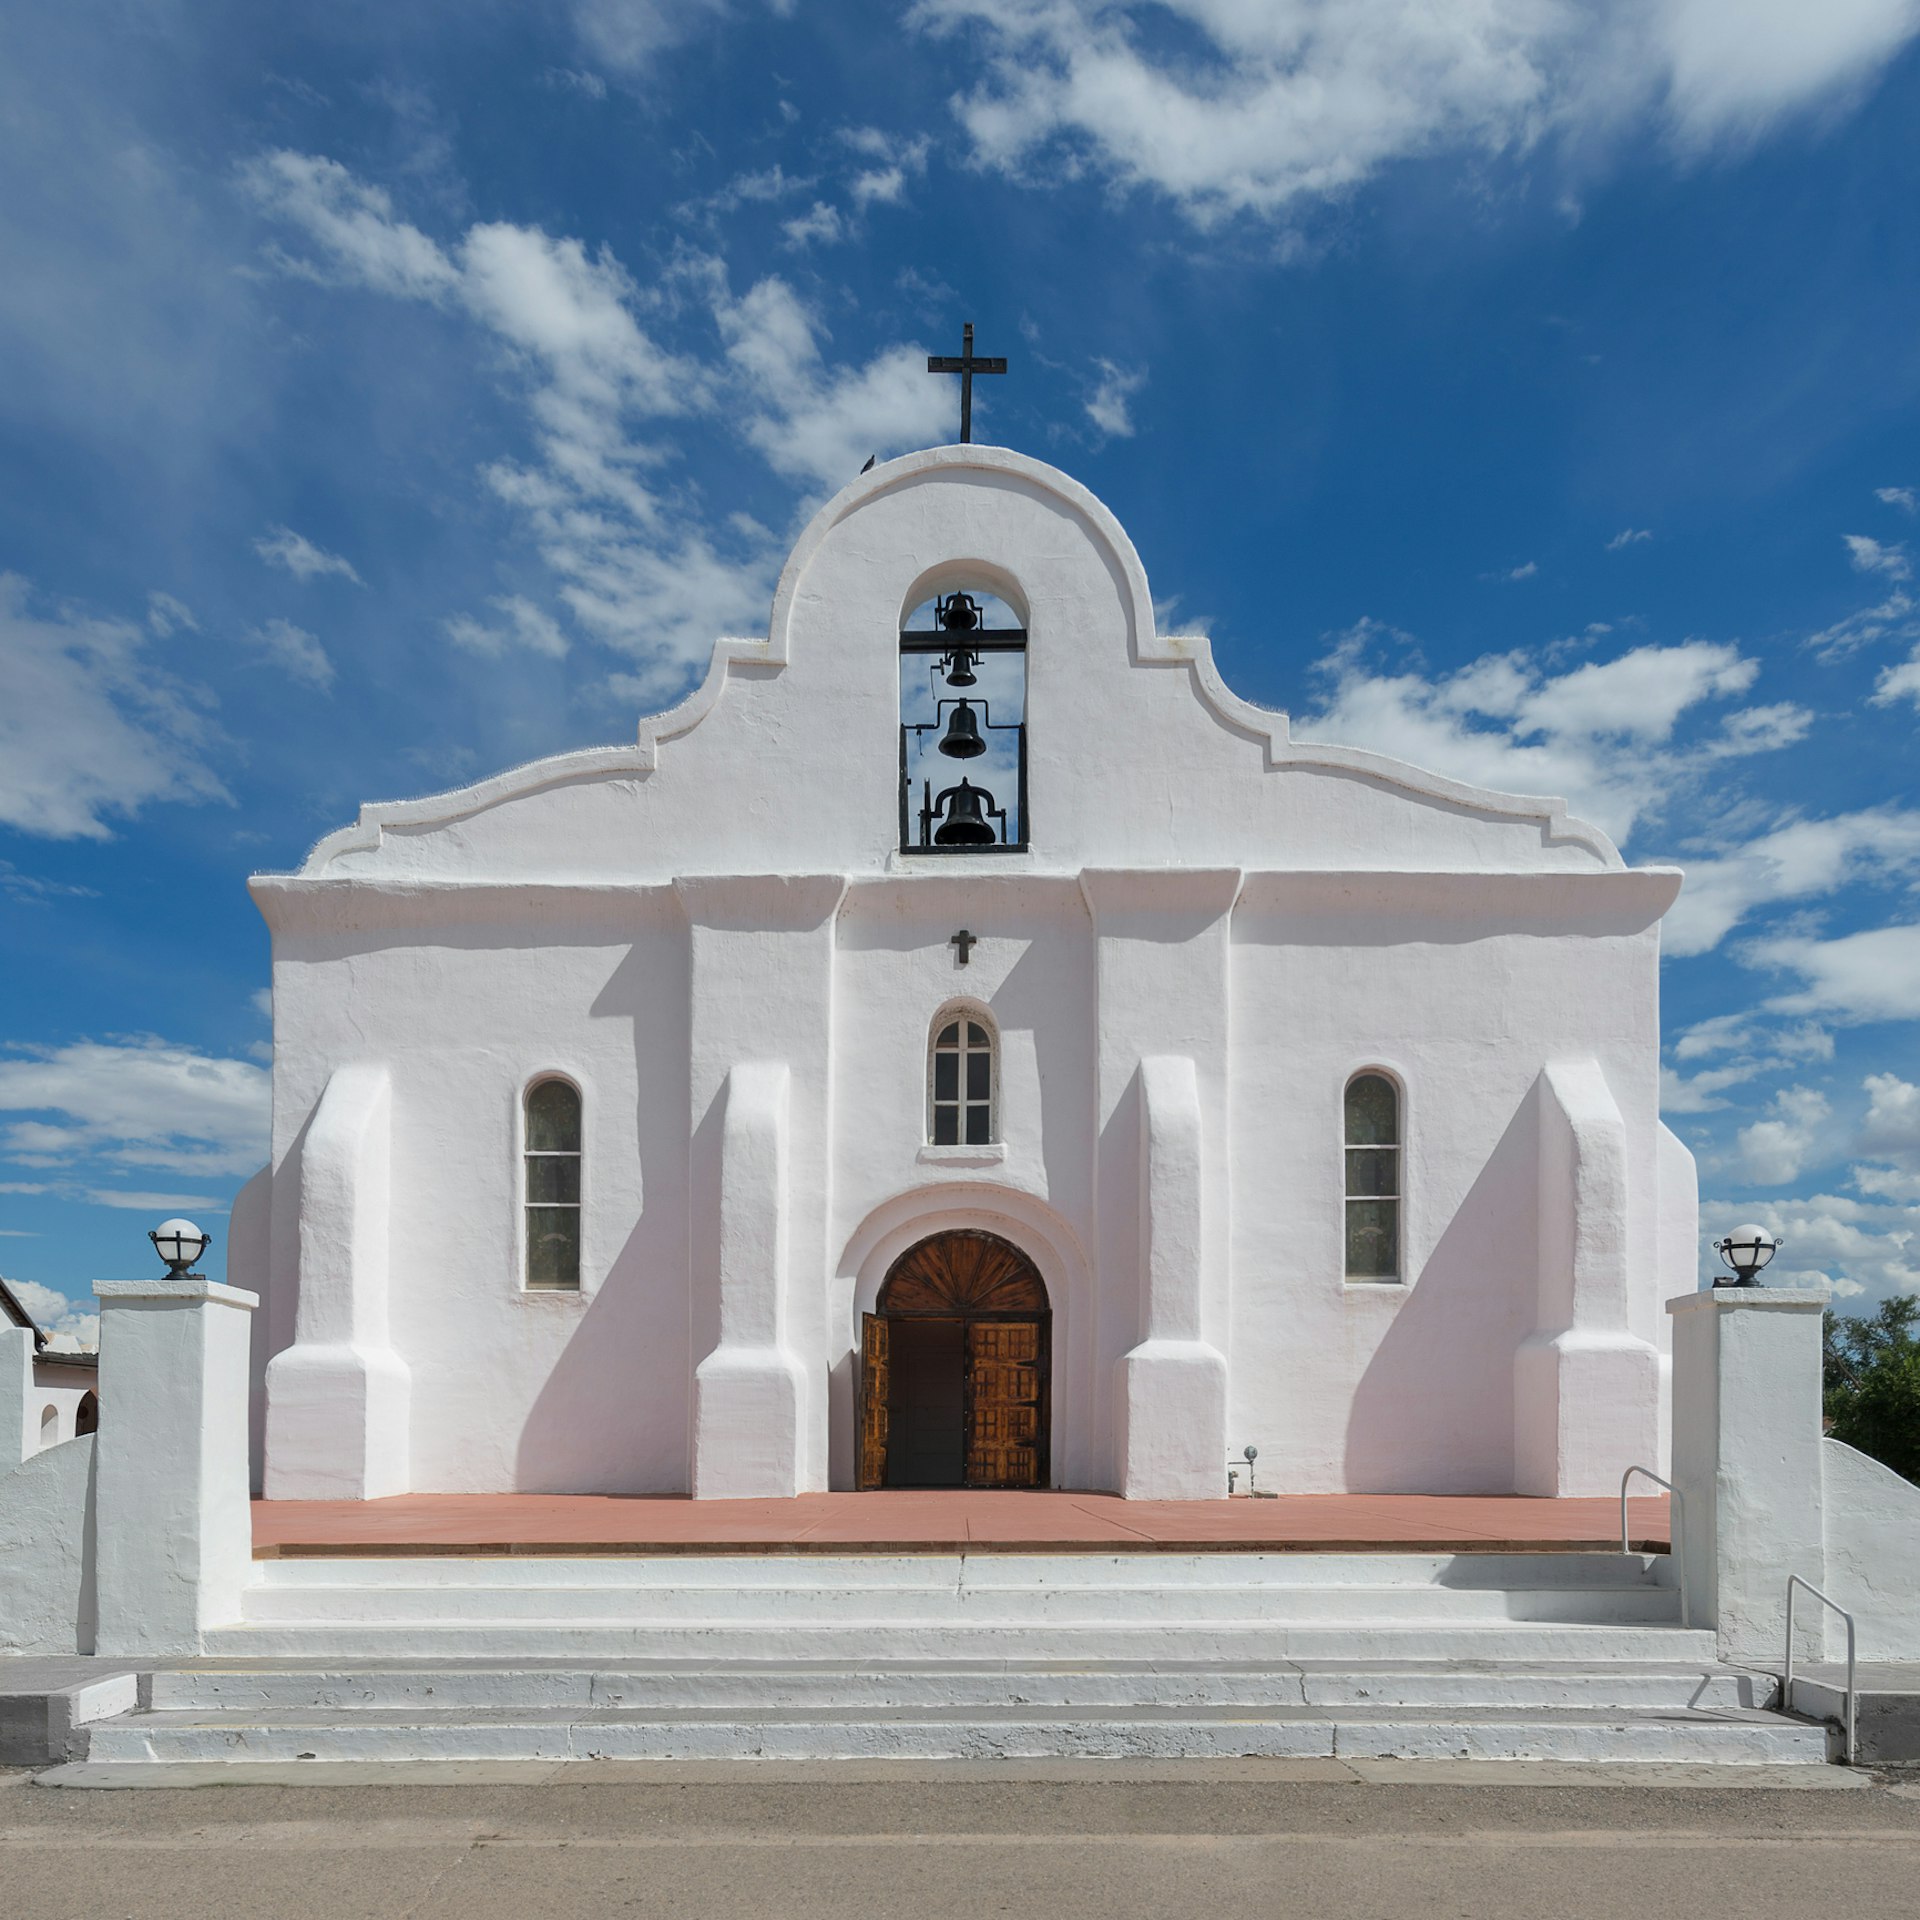 Exterior of the San Elizario Chapel in El Paso Texas USA